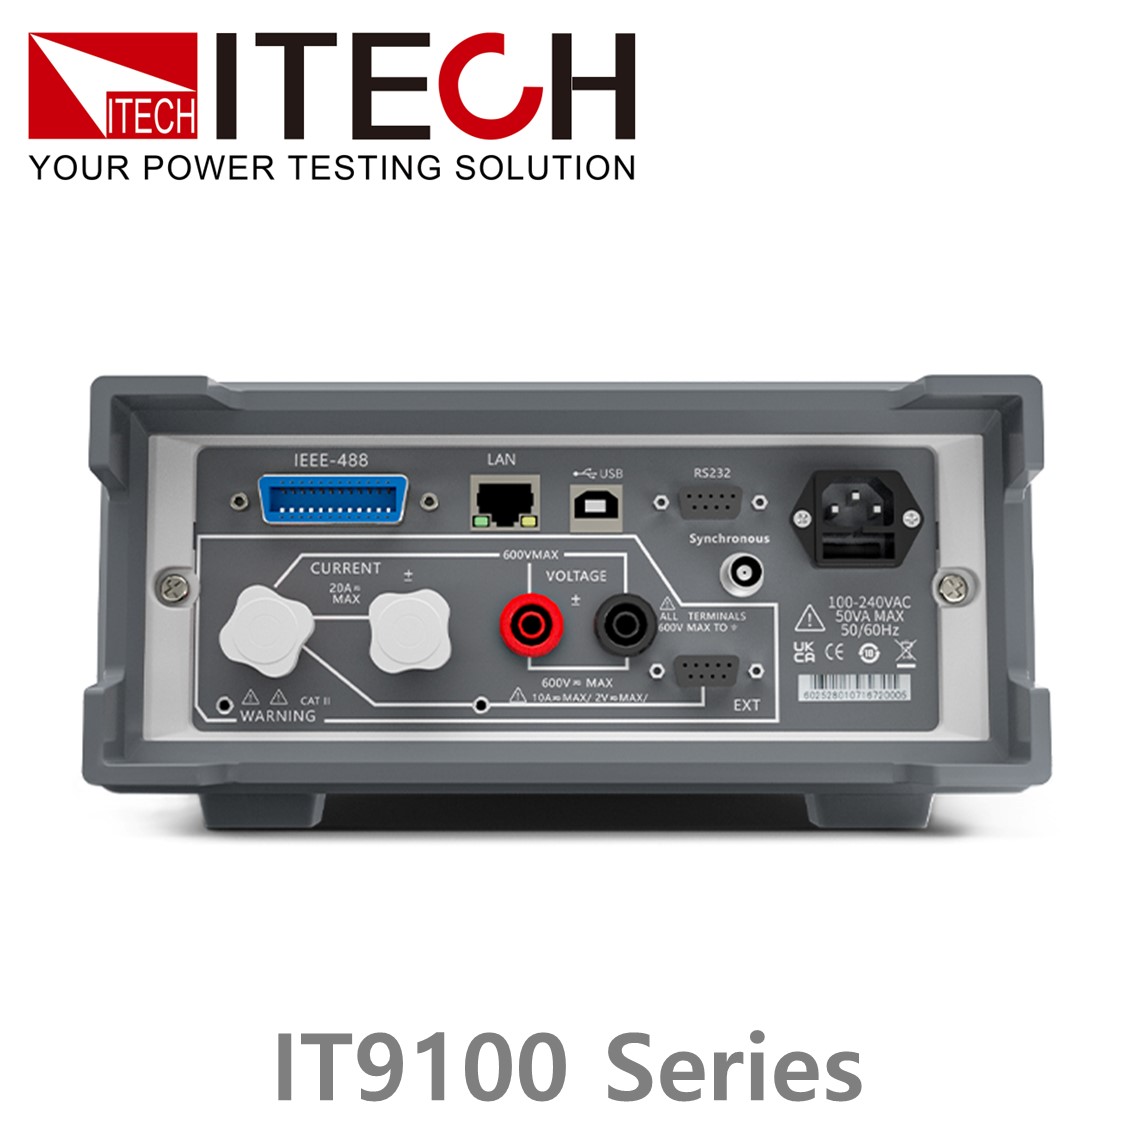 [ ITECH ] IT9100시리즈 파워미터, 전력테스터(1000Vrms/50Arms/100kHz)